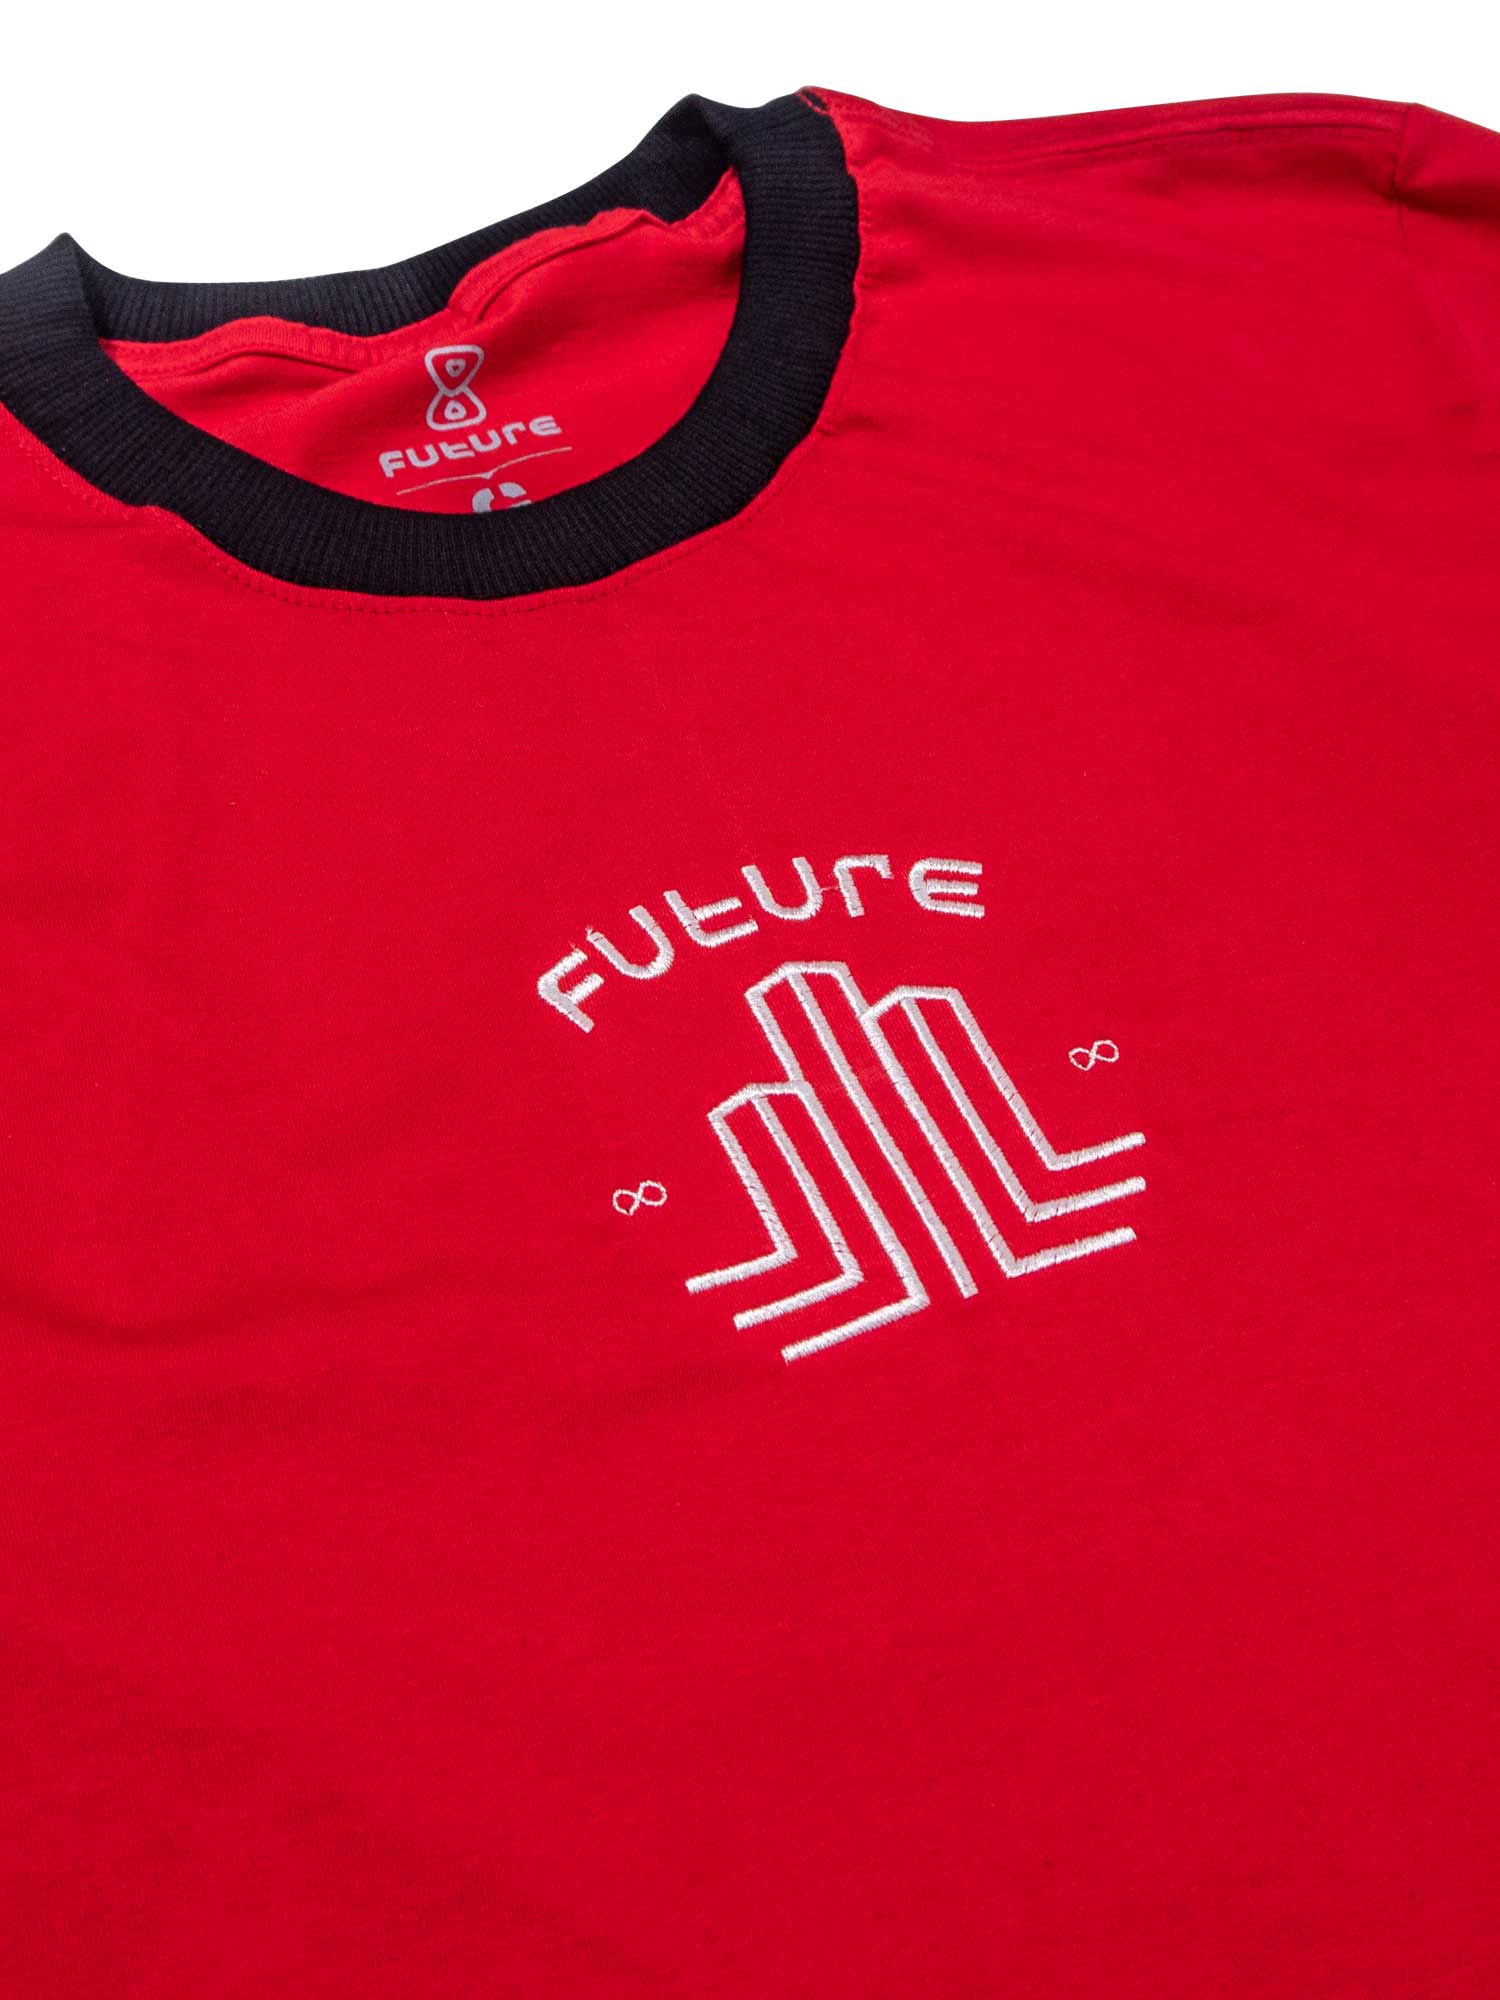     Camiseta-Future-City-Players-Vermelha-Frente-Close